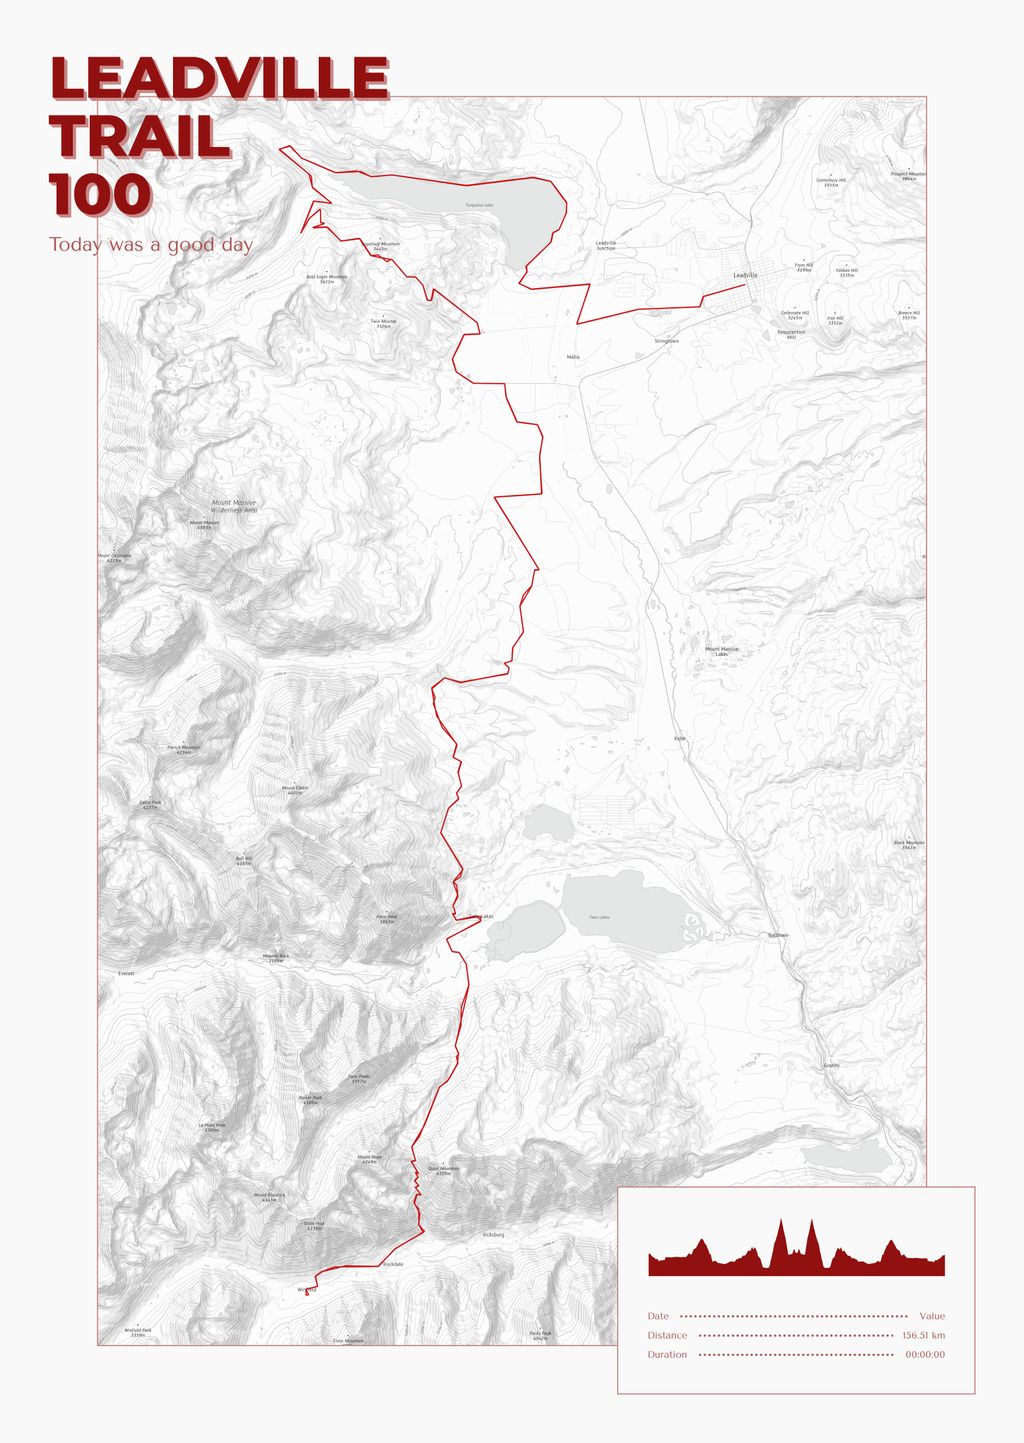 Póster con un mapa de Leadville 
Trail 
100